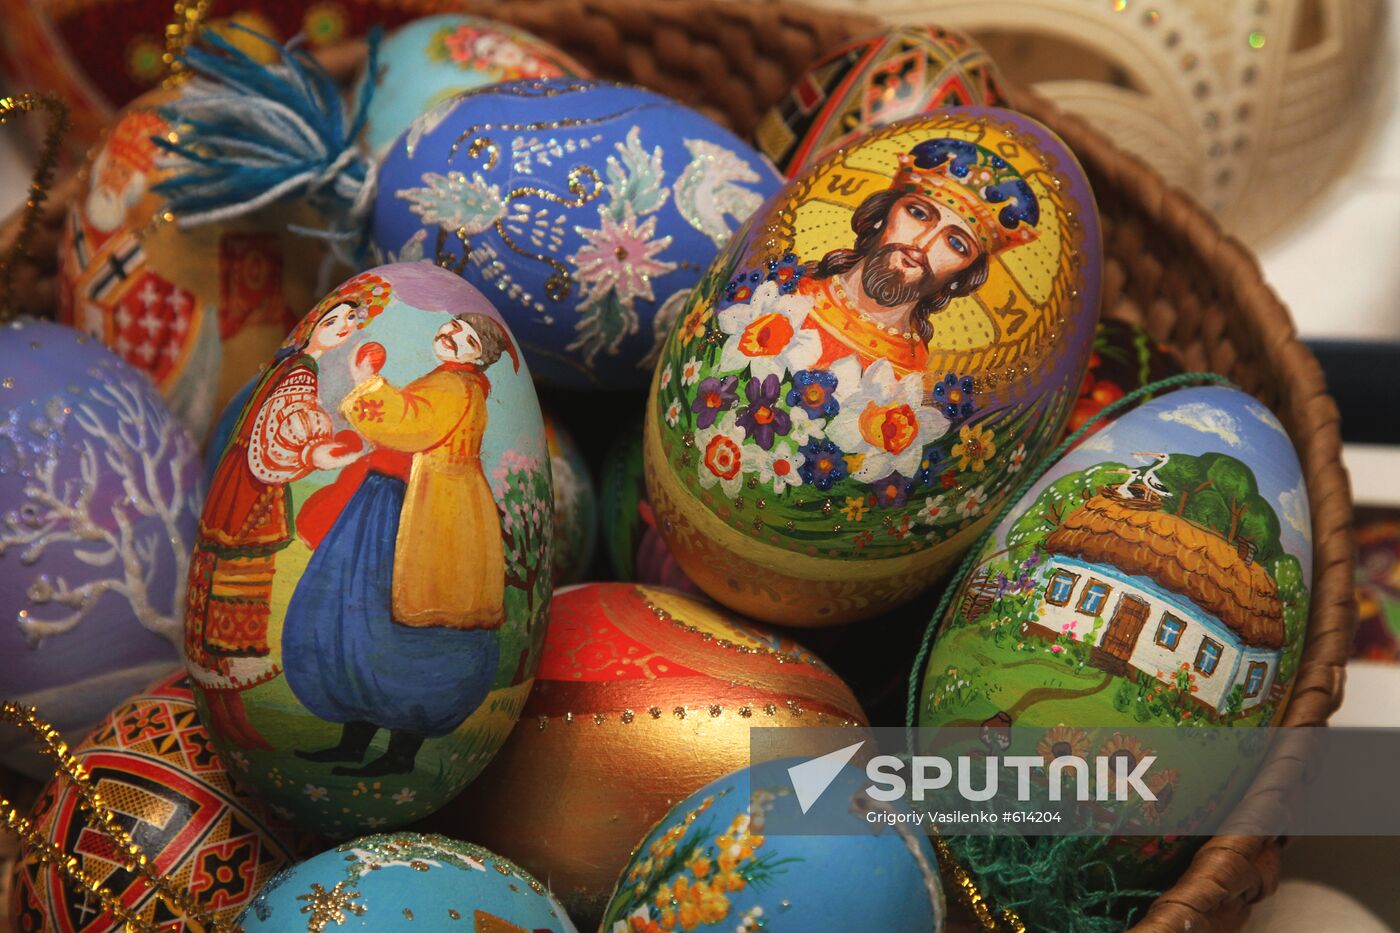 Easter Fair in Kiev